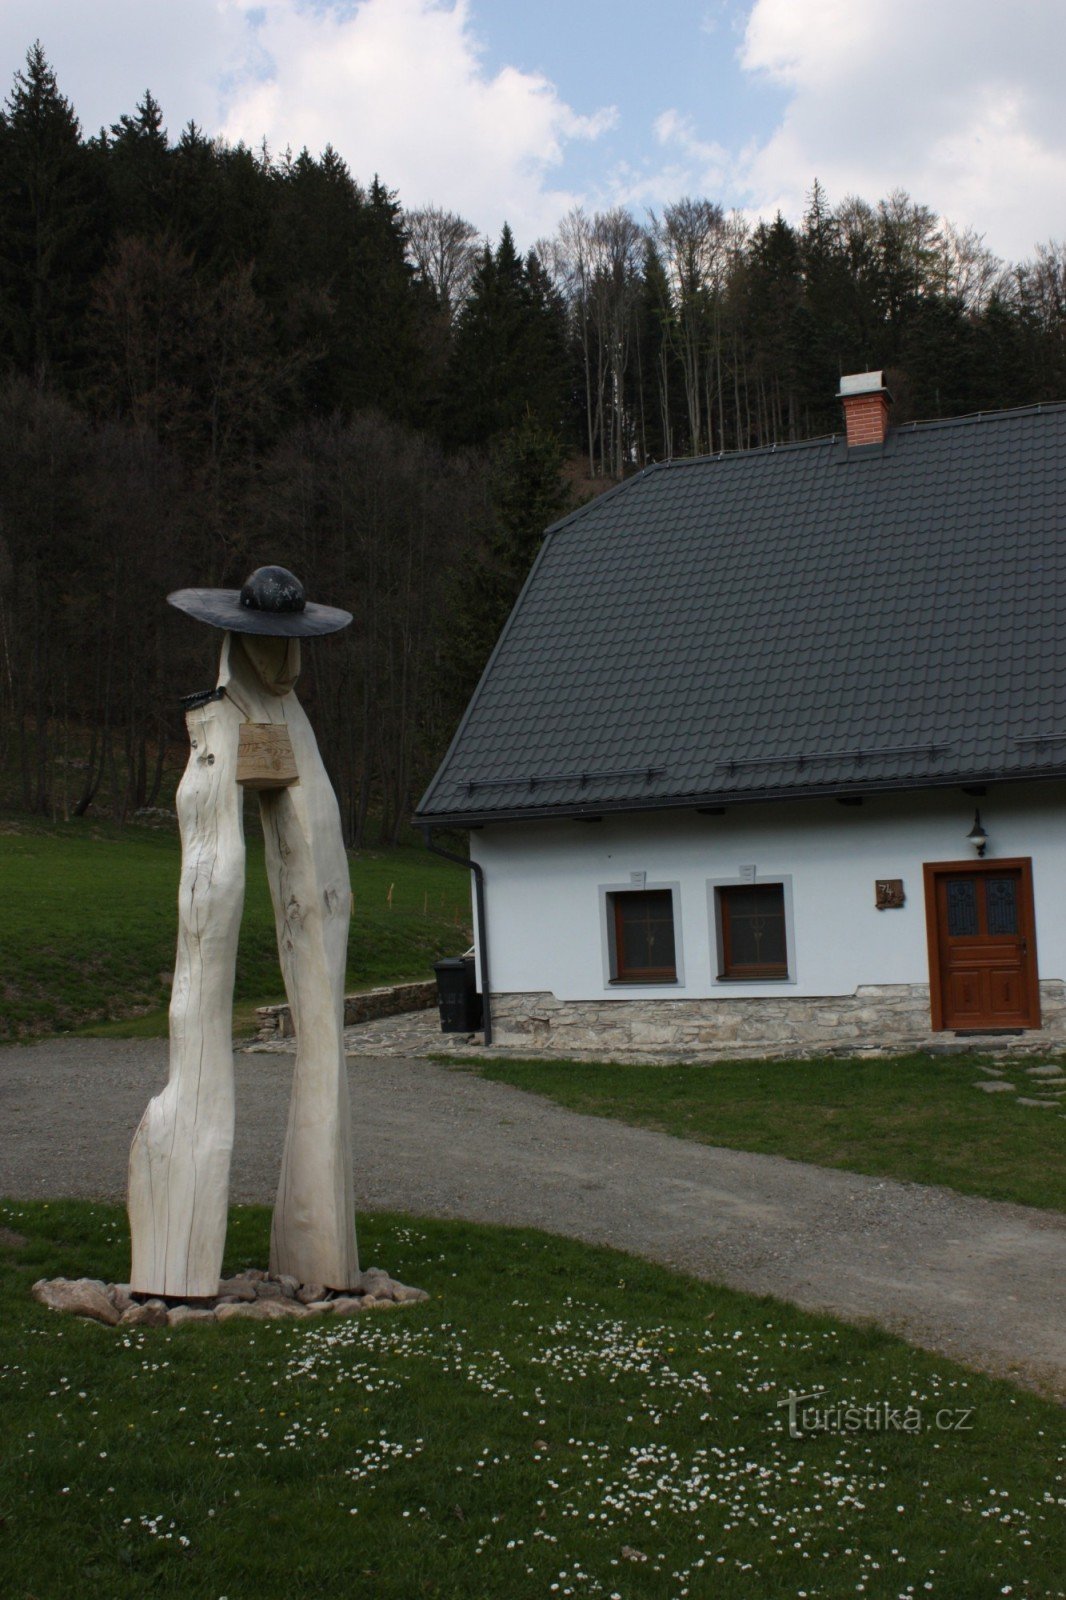 Котедж Pod Sviní horou в селі Vláská біля підніжжя гірського масиву Kralické Sněžník